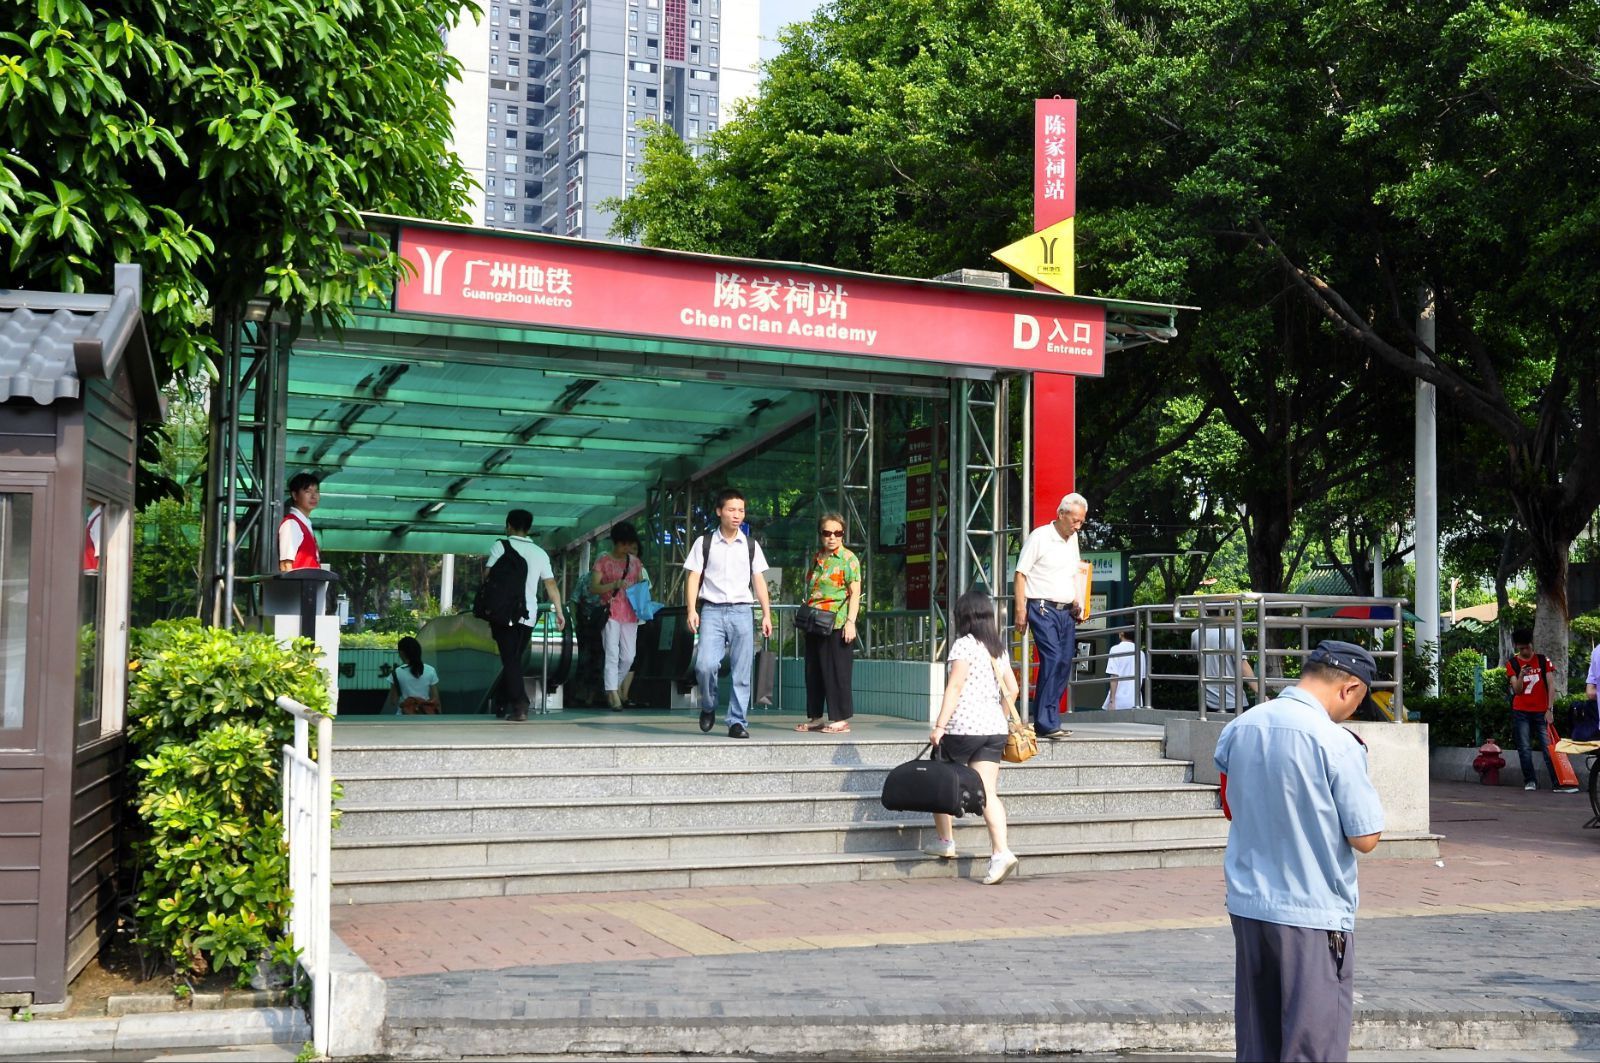 地铁一号线的陈家祠站位於陈家祠旁;祠前建有大型绿化广场 陈家祠